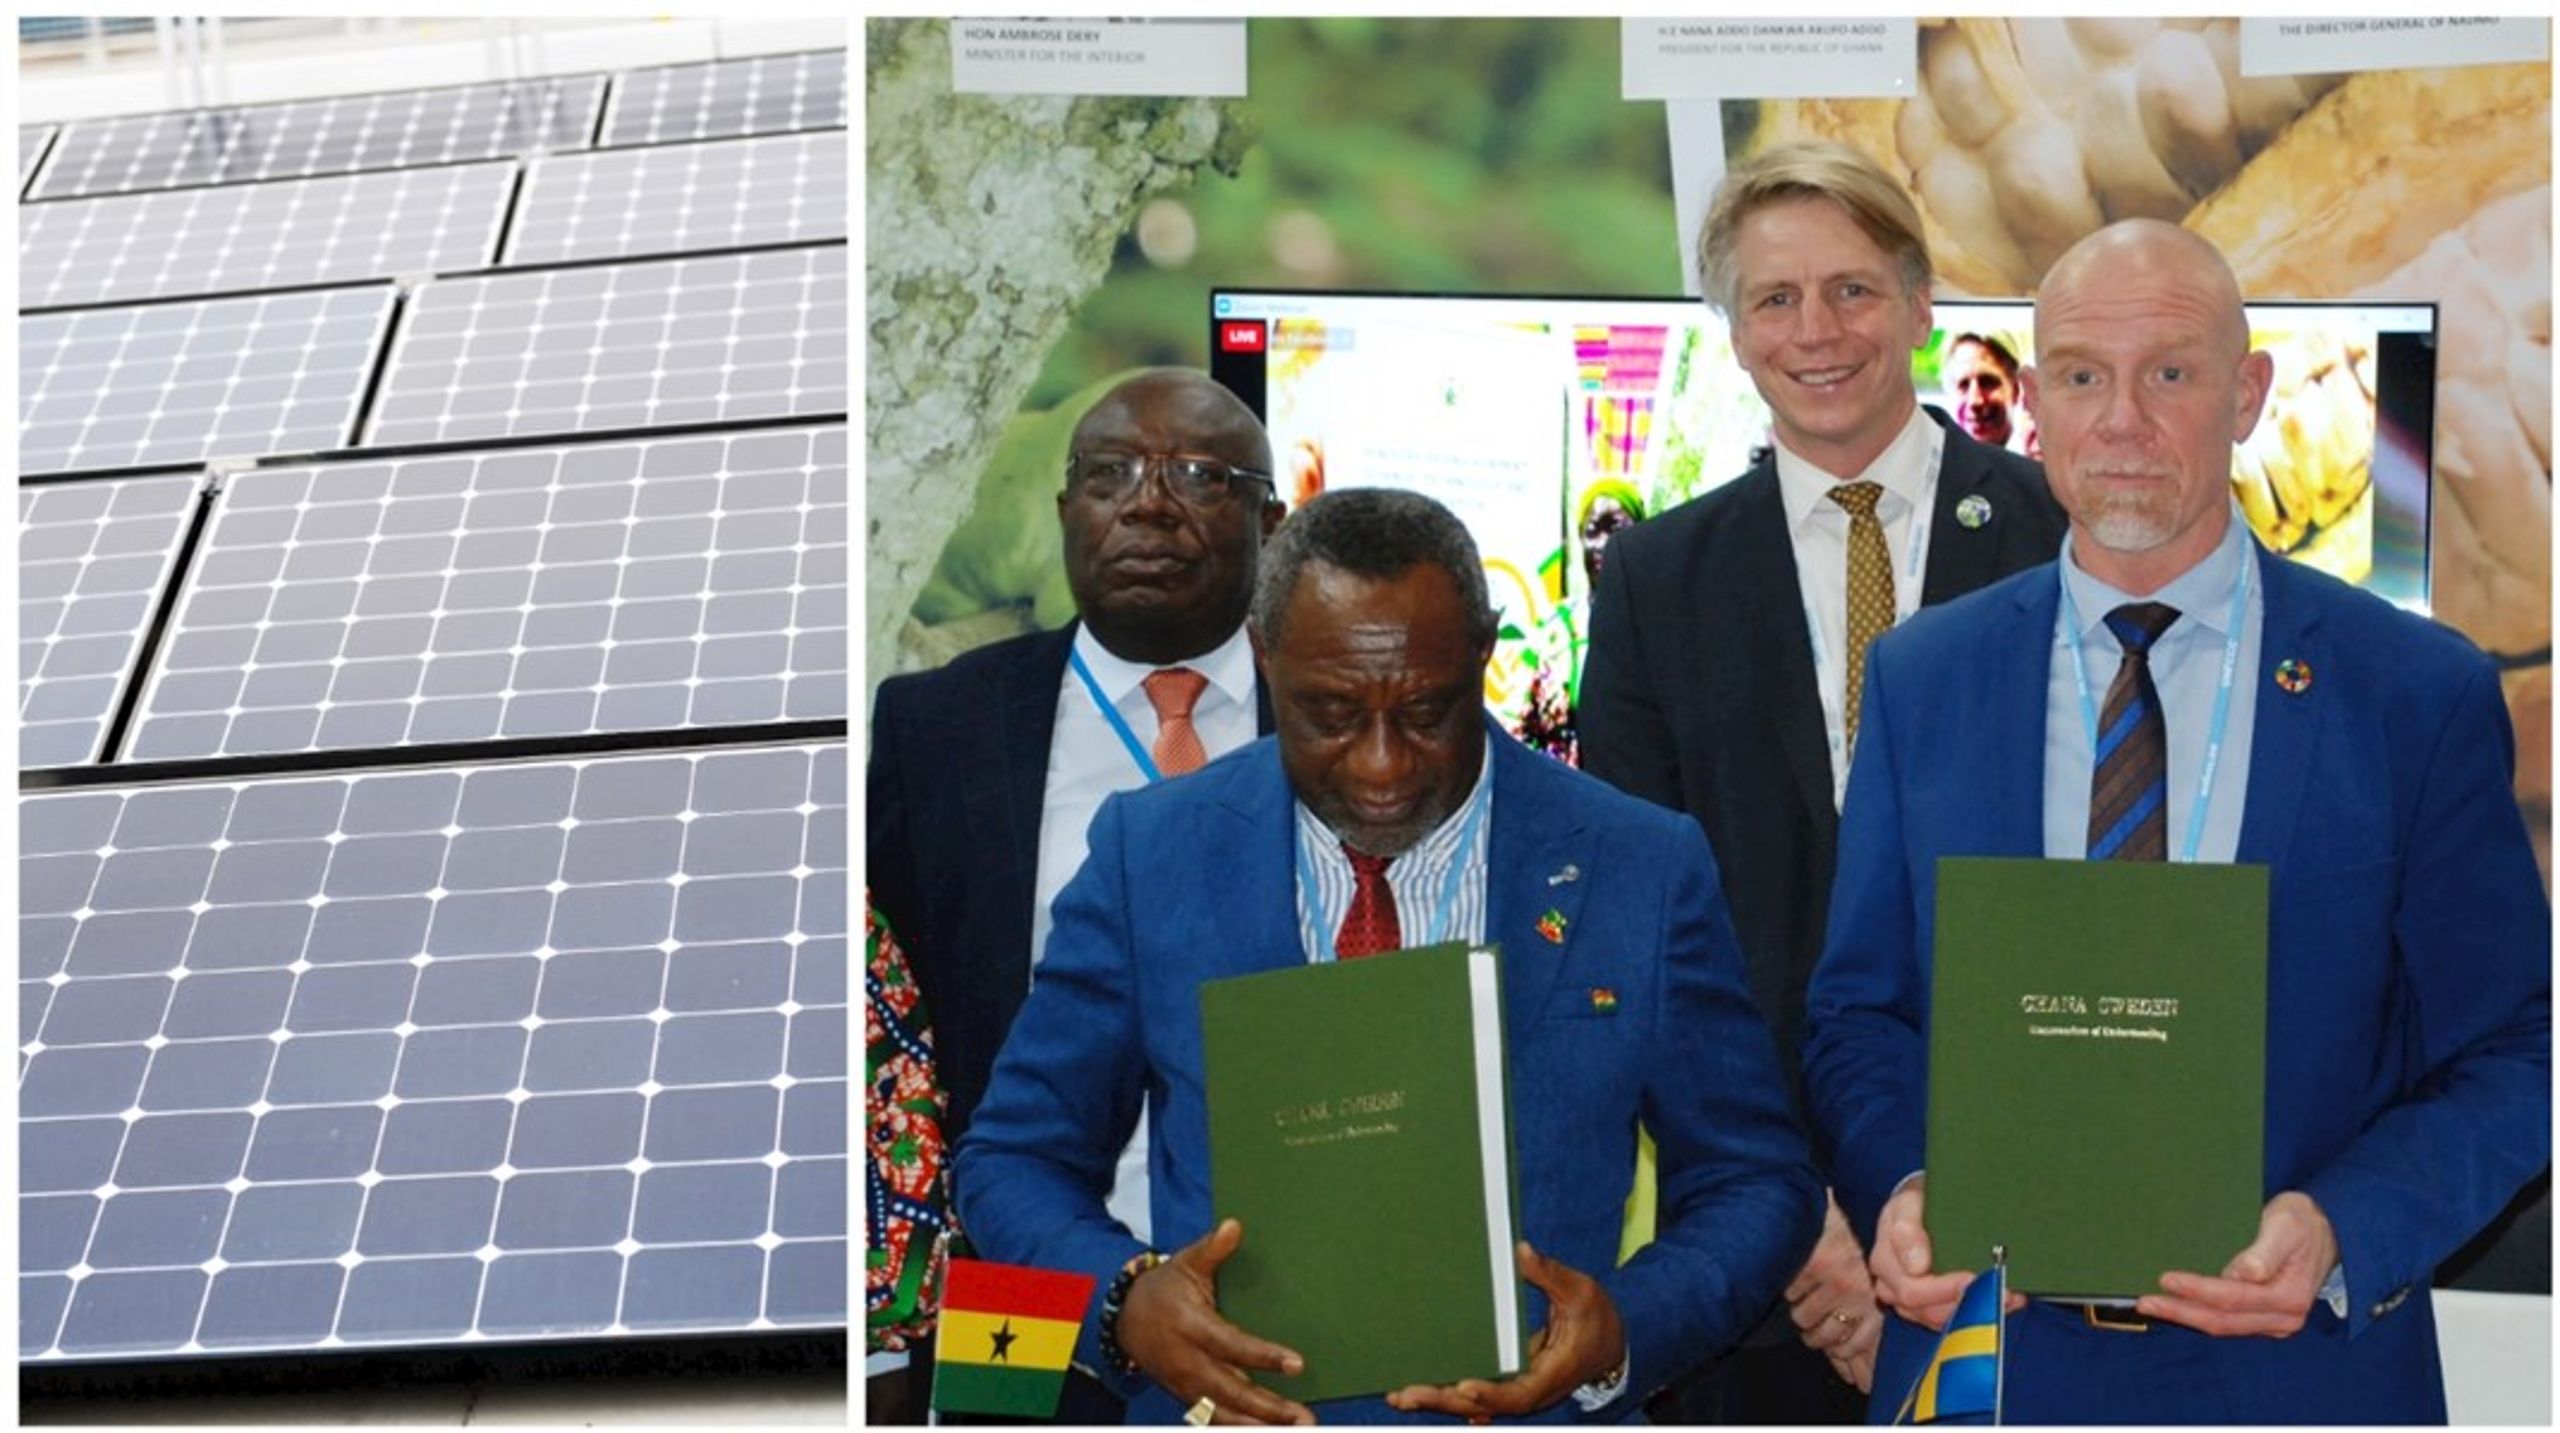 Utsläppsköpsavtal inom Parisavtalet har redan tecknats mellan flera parter, bland andra Sverige och Ghana som samarbetar kring bland annat solenergiprojekt. Men det står inte klart hur affärerna ska räknas hem, efter att ännu ett försök till överenskommelse stoppades i Dubai. <br>